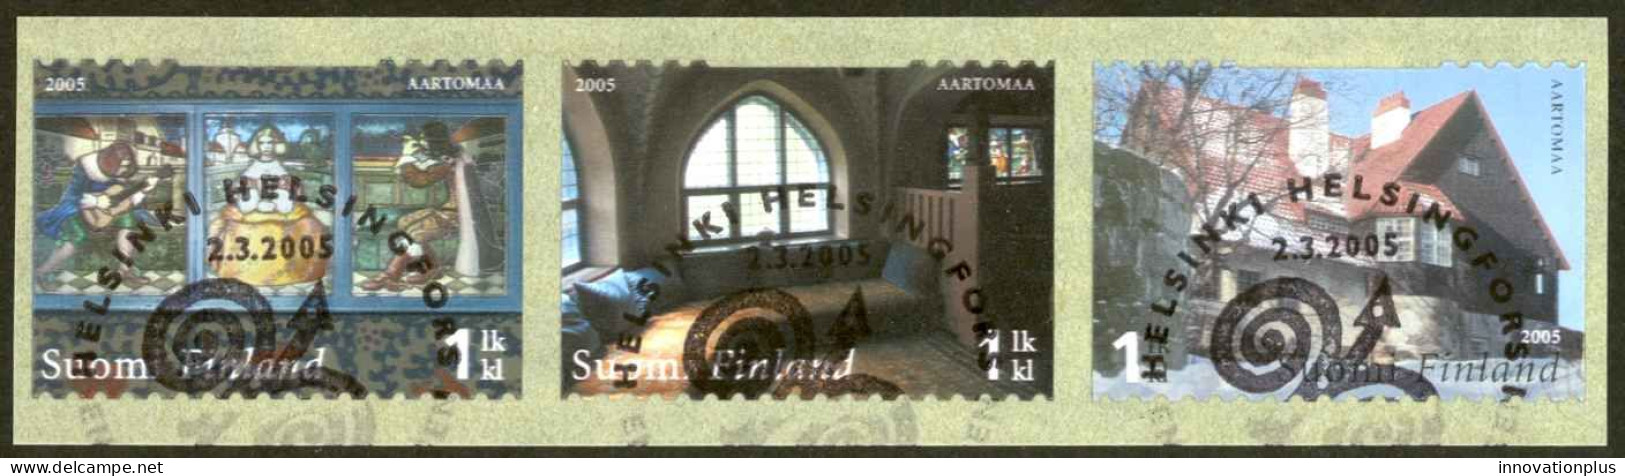 Finland Sc# 1233 FD Cancel Strip/3 2005 Hvittrask - Used Stamps